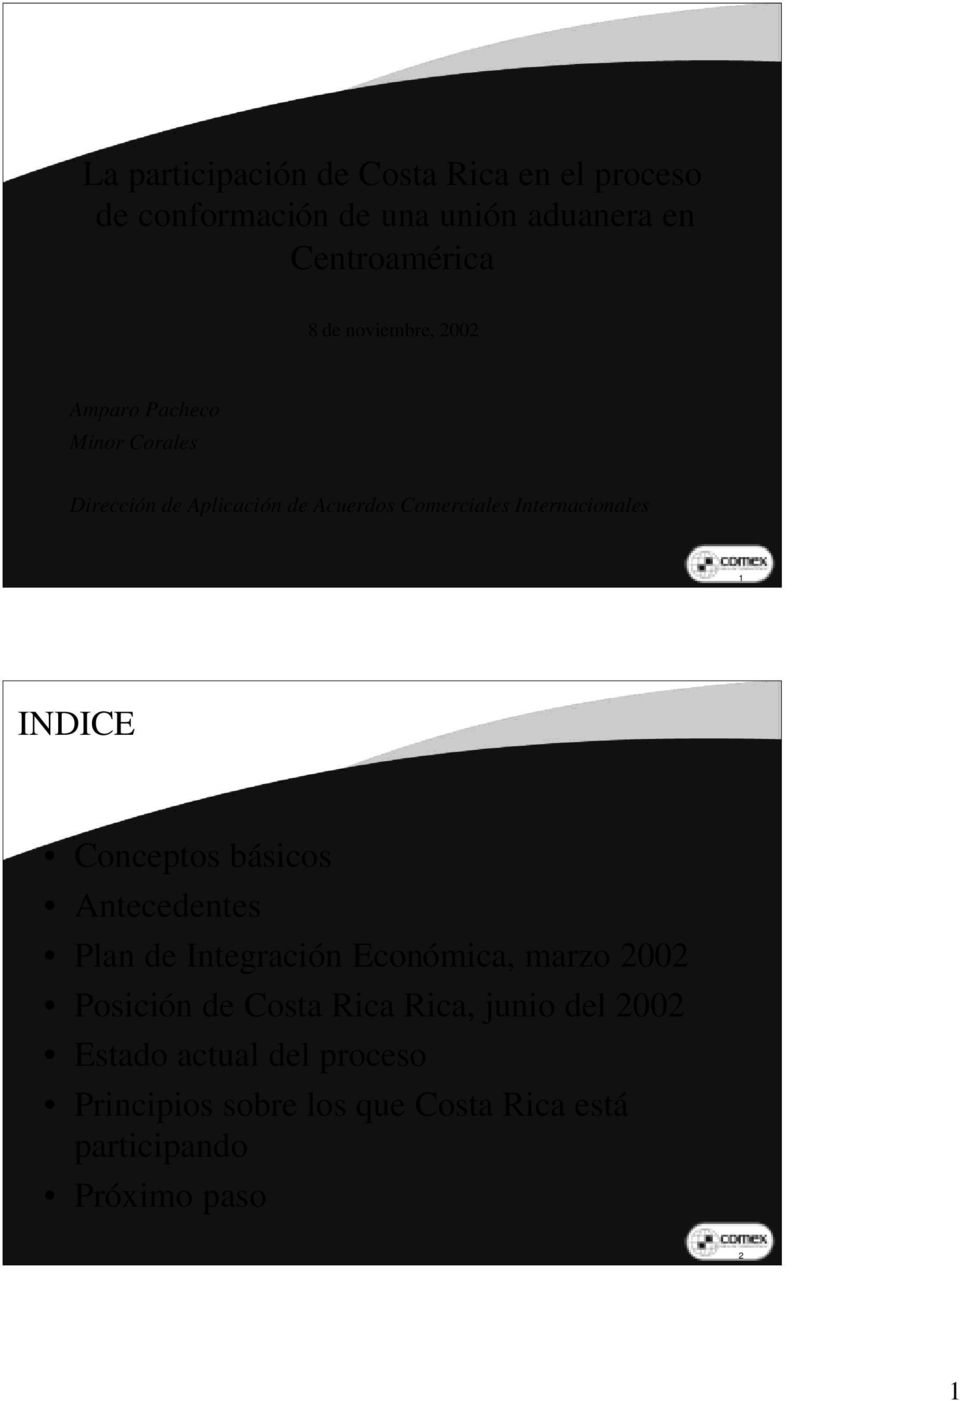 1 INDICE Conceptos básicos Antecedentes Plan de Integración Económica, marzo 2002 Posición de Costa Rica